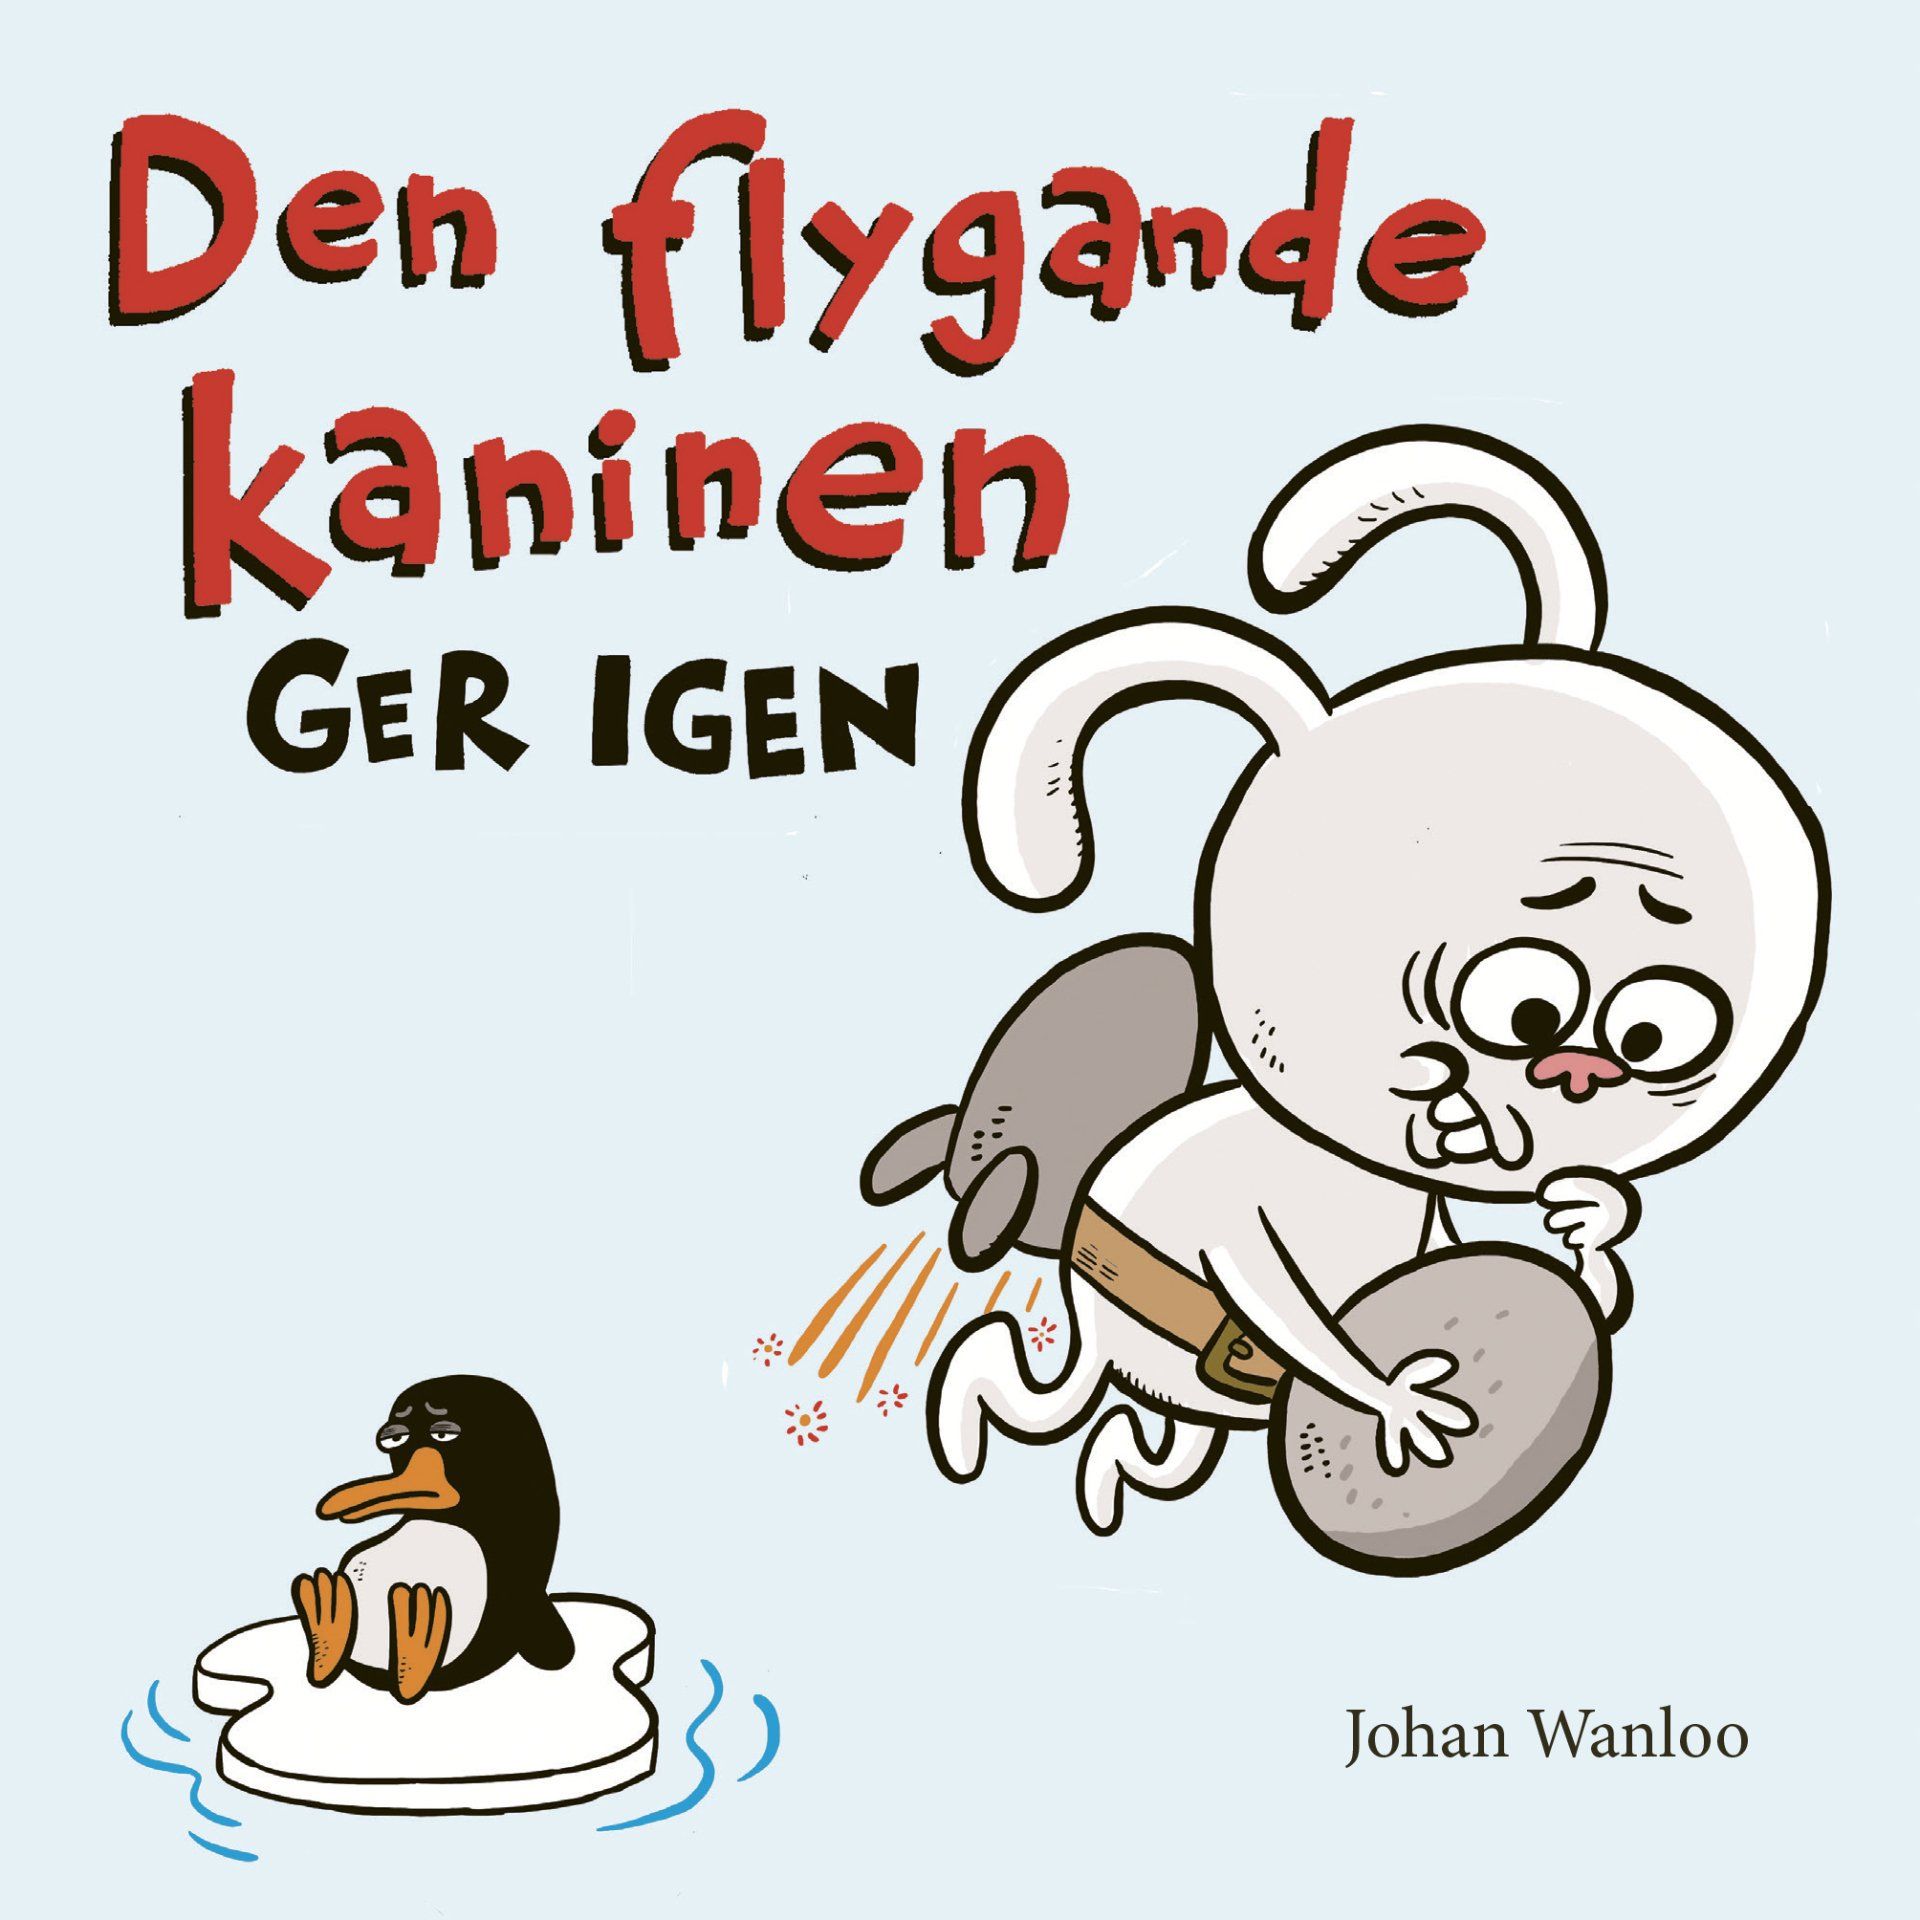 Barnboken Den flygande kaninen ger igen är skriven av Johan Waloo på Stevali Bokförlag.